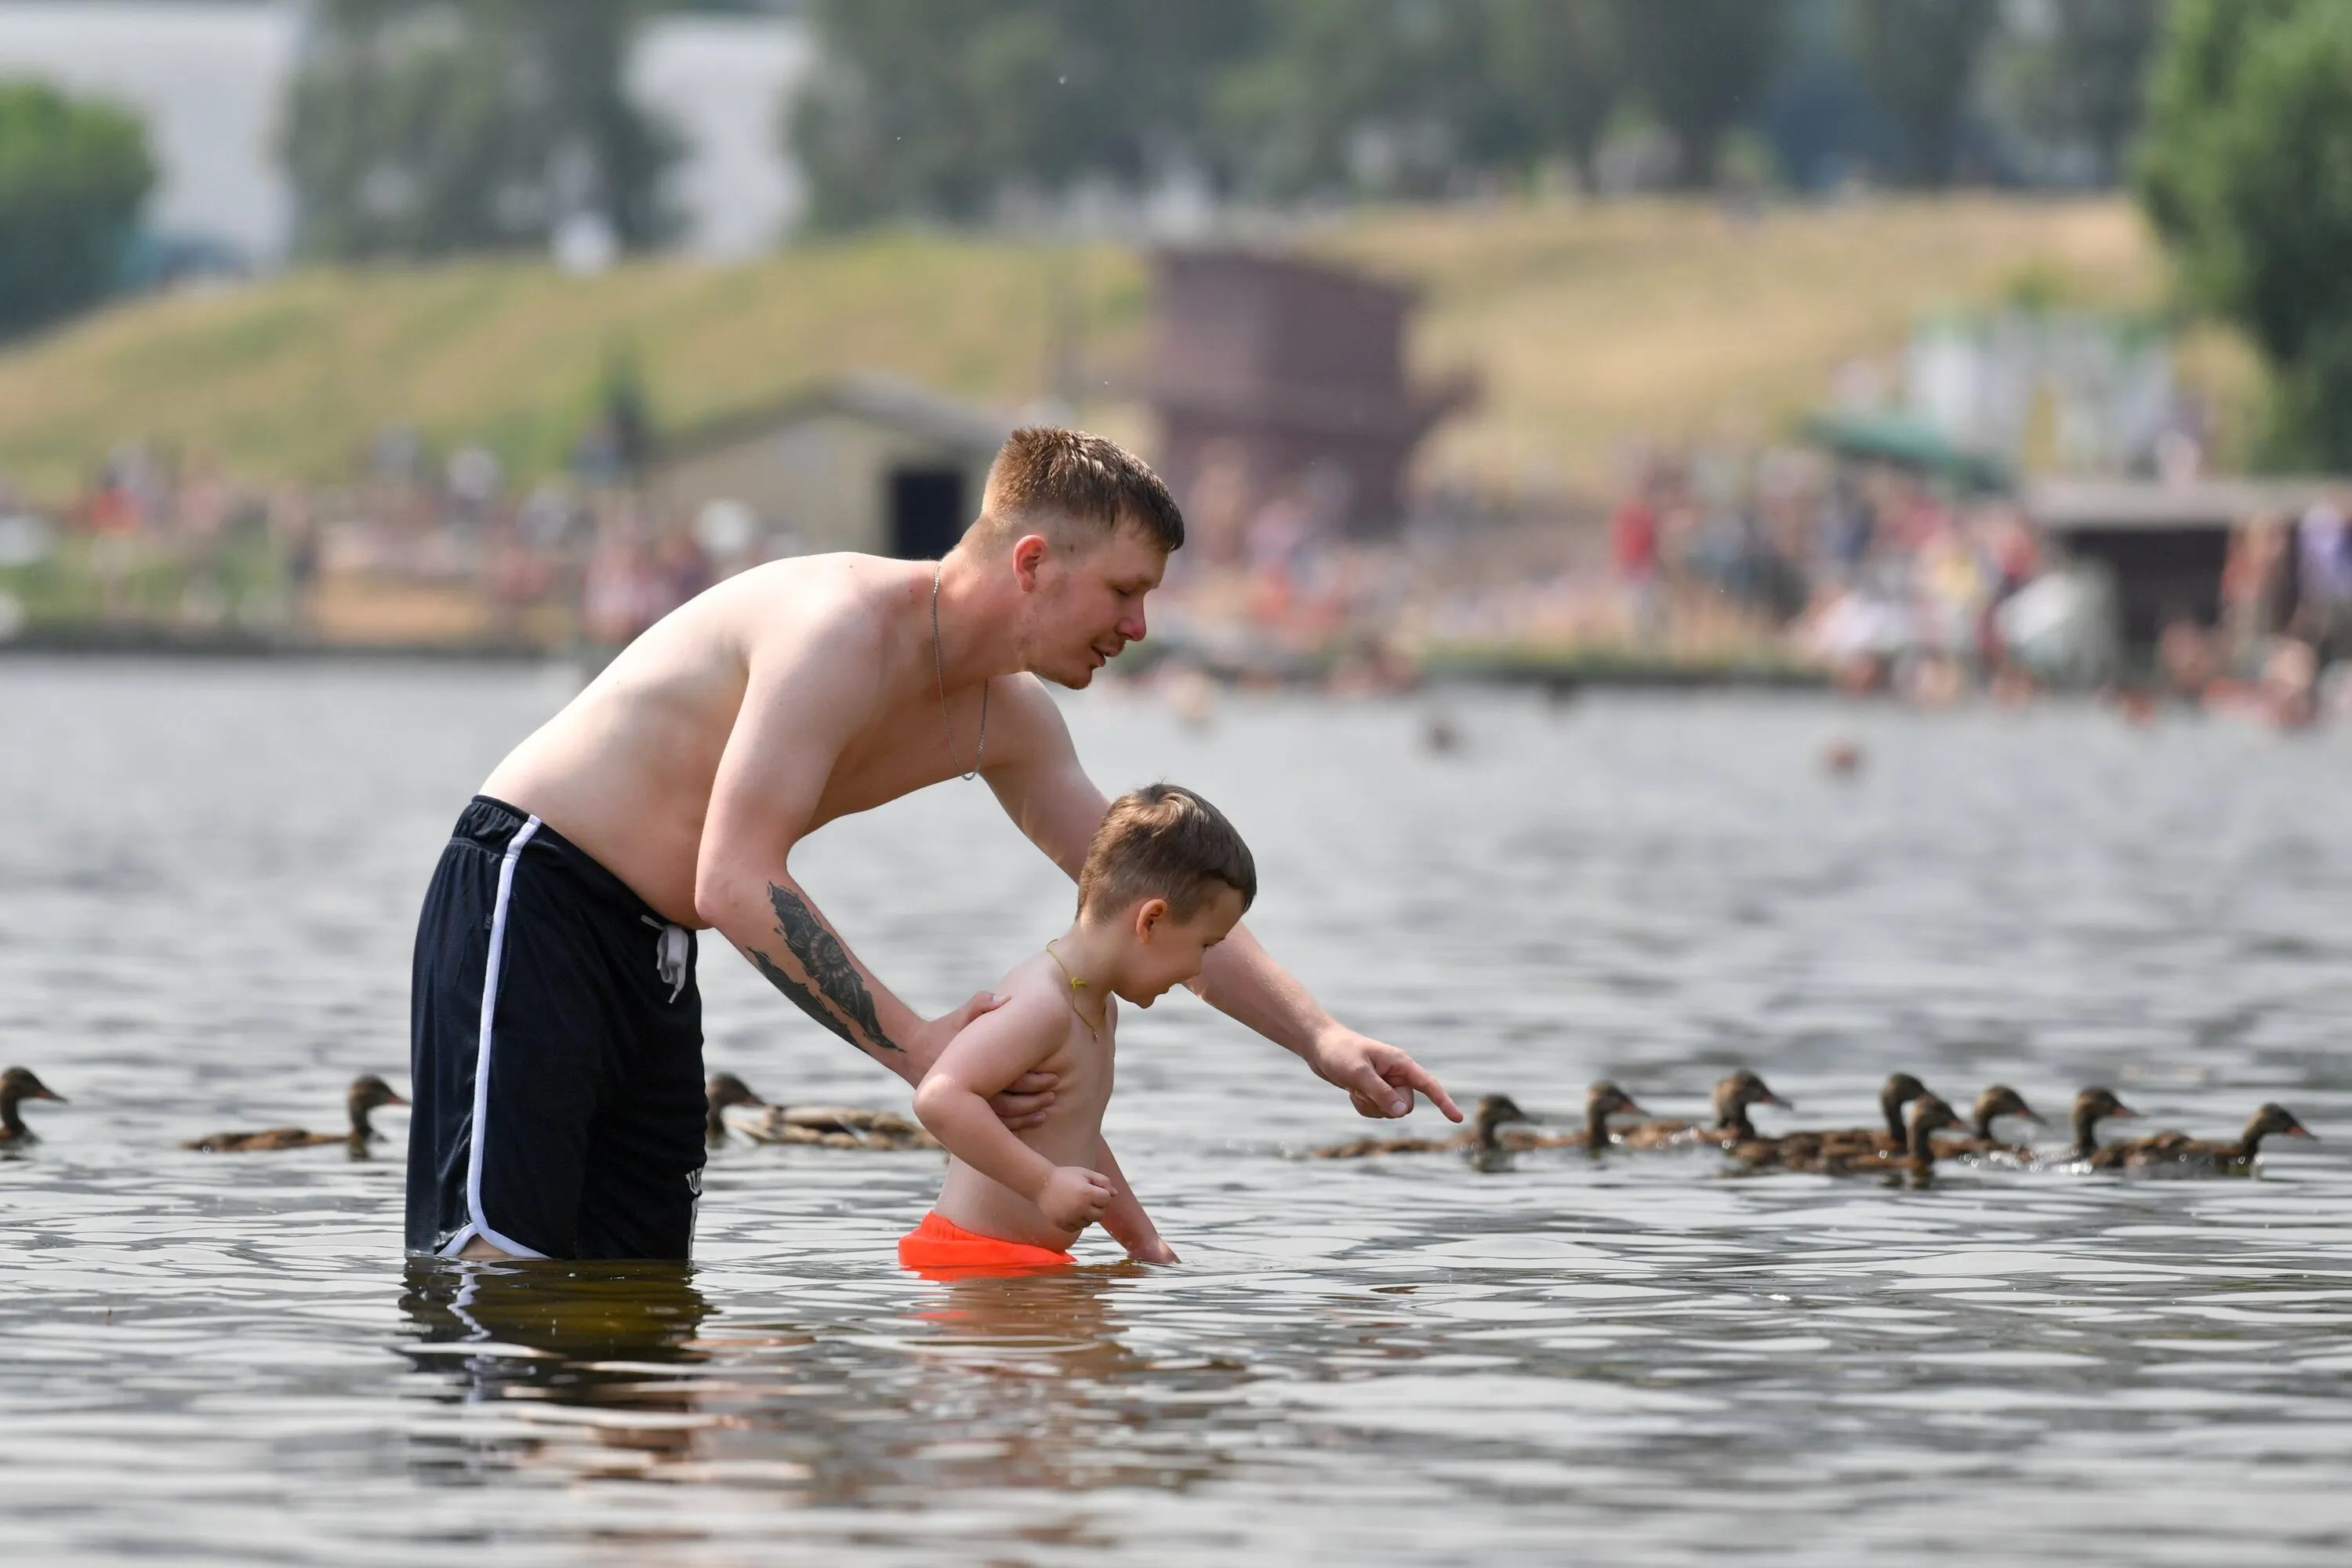 "Полезут только смельчаки": Москвичей предупредили об опасности купания в первые дни лета